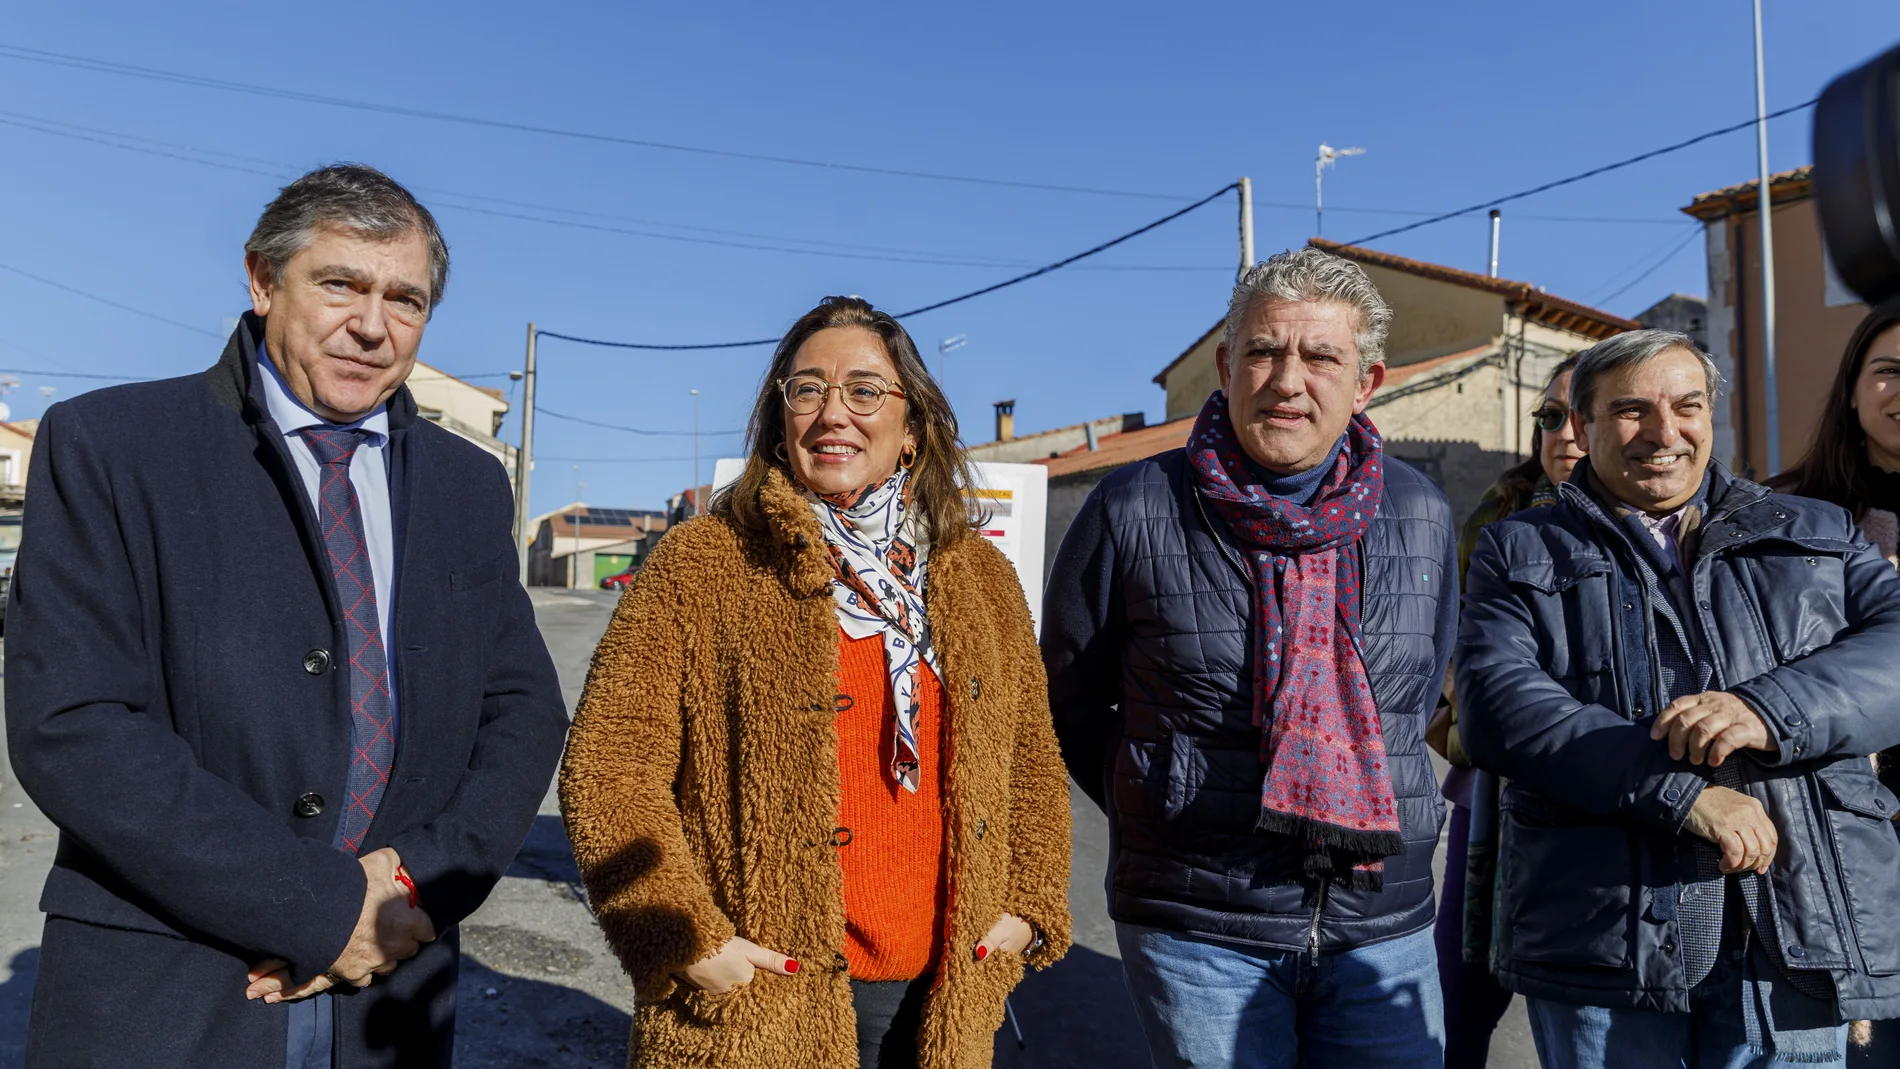 La consejera María González Corral visita el resultado de las obras realizadas en la carretera de San Miguel de Bernuy (Segovia).